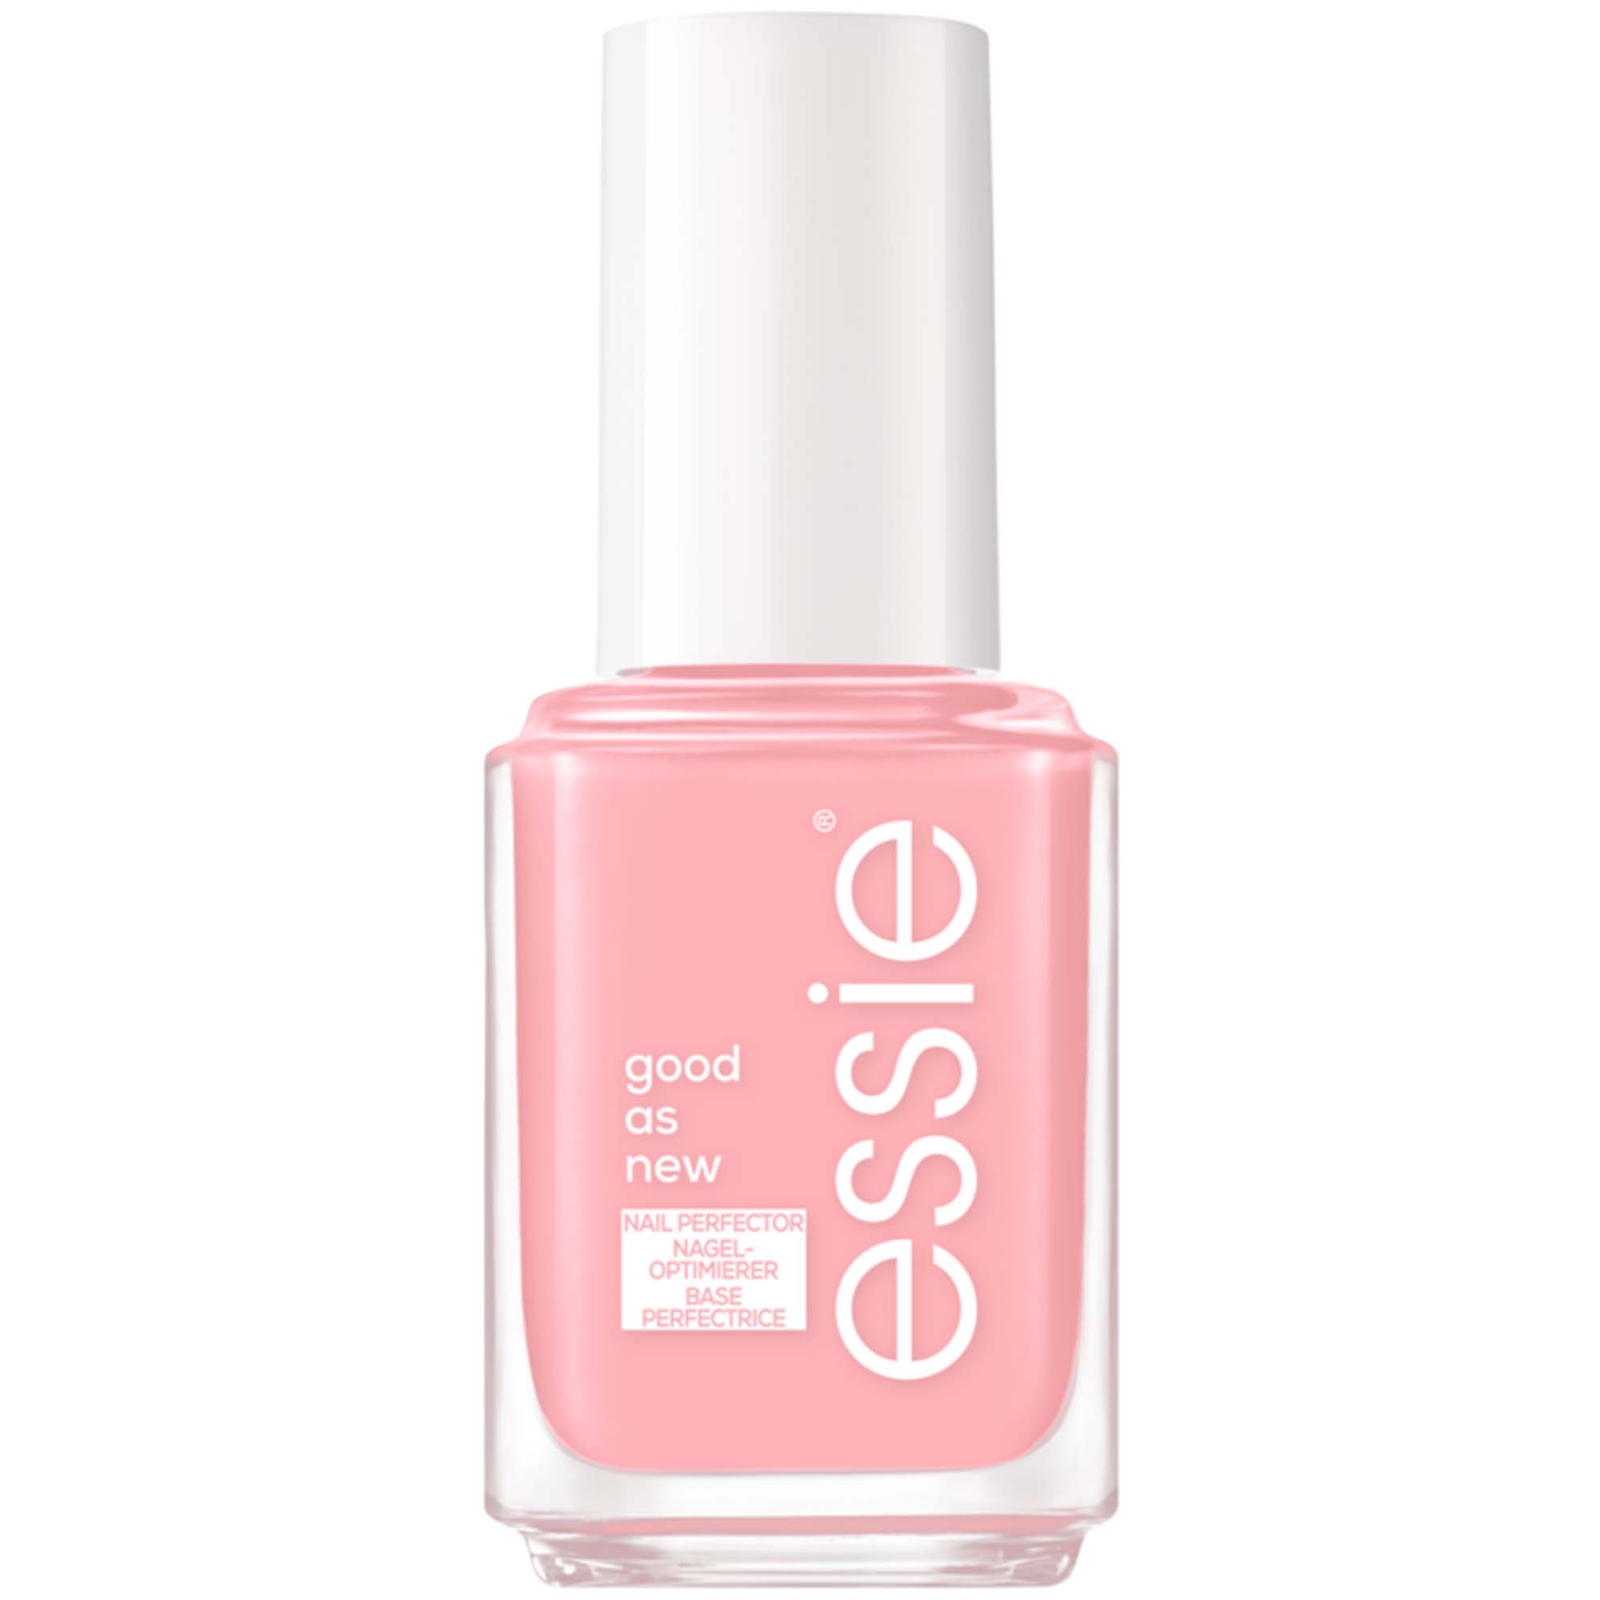 essie Nail Care Treatment Good As New Nail Perfector (Various Shades) - Sheer Pink